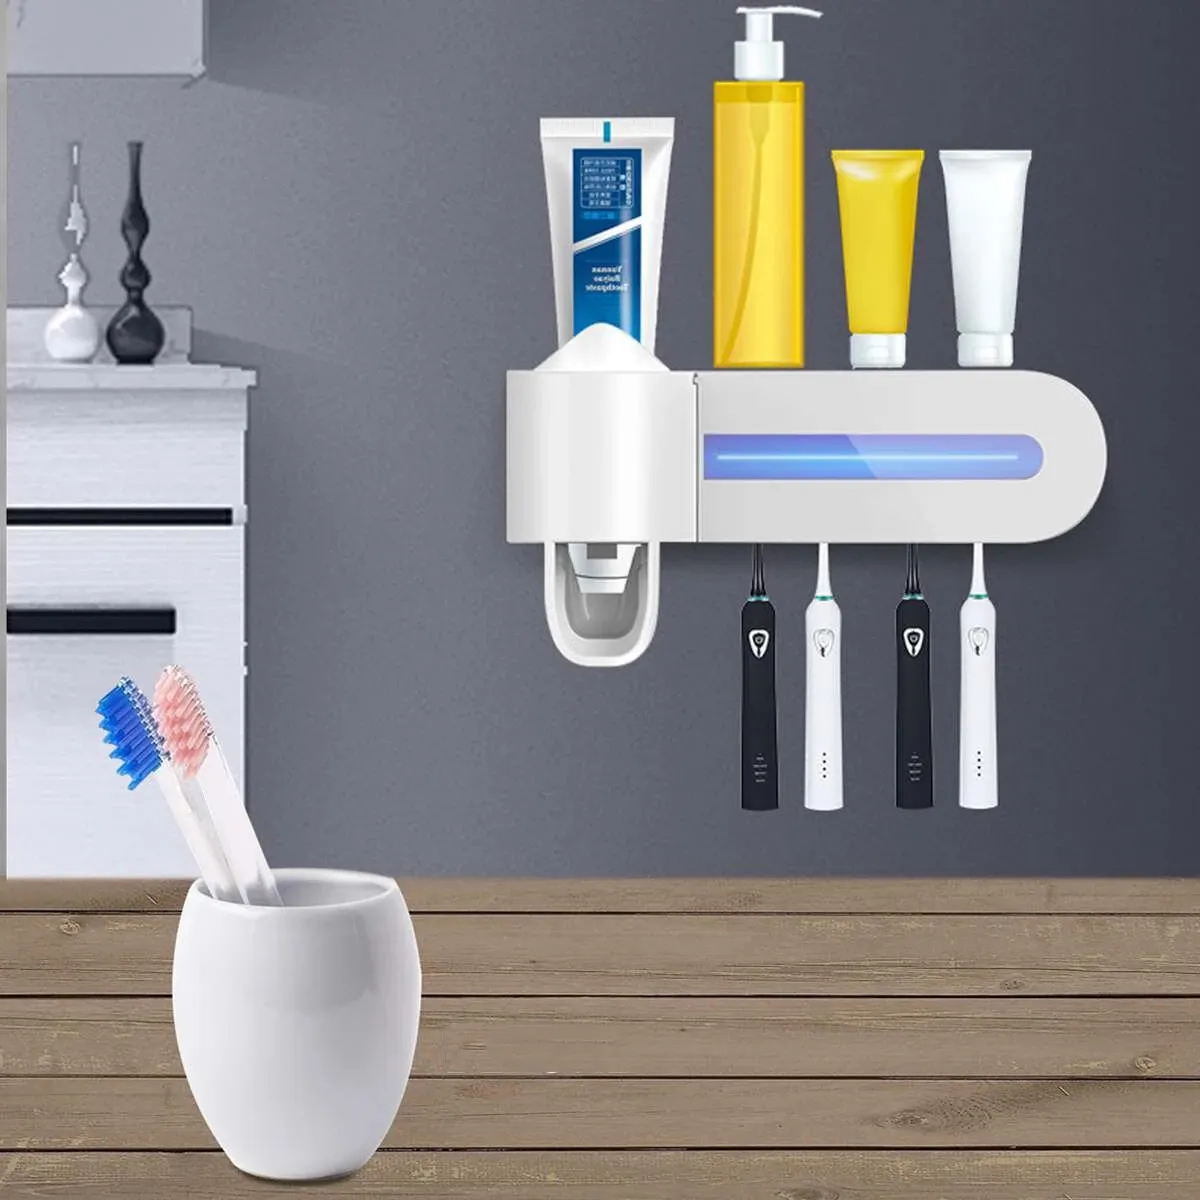 UV Diş Fırçası Tutucu 4 Yuvası Diş Macunu Dağıtıcı Diş Fırçası Saklama Kutusu Duvar Dağı Ev Temizleyici Sterilize Banyo Aksesuarları - Pembe